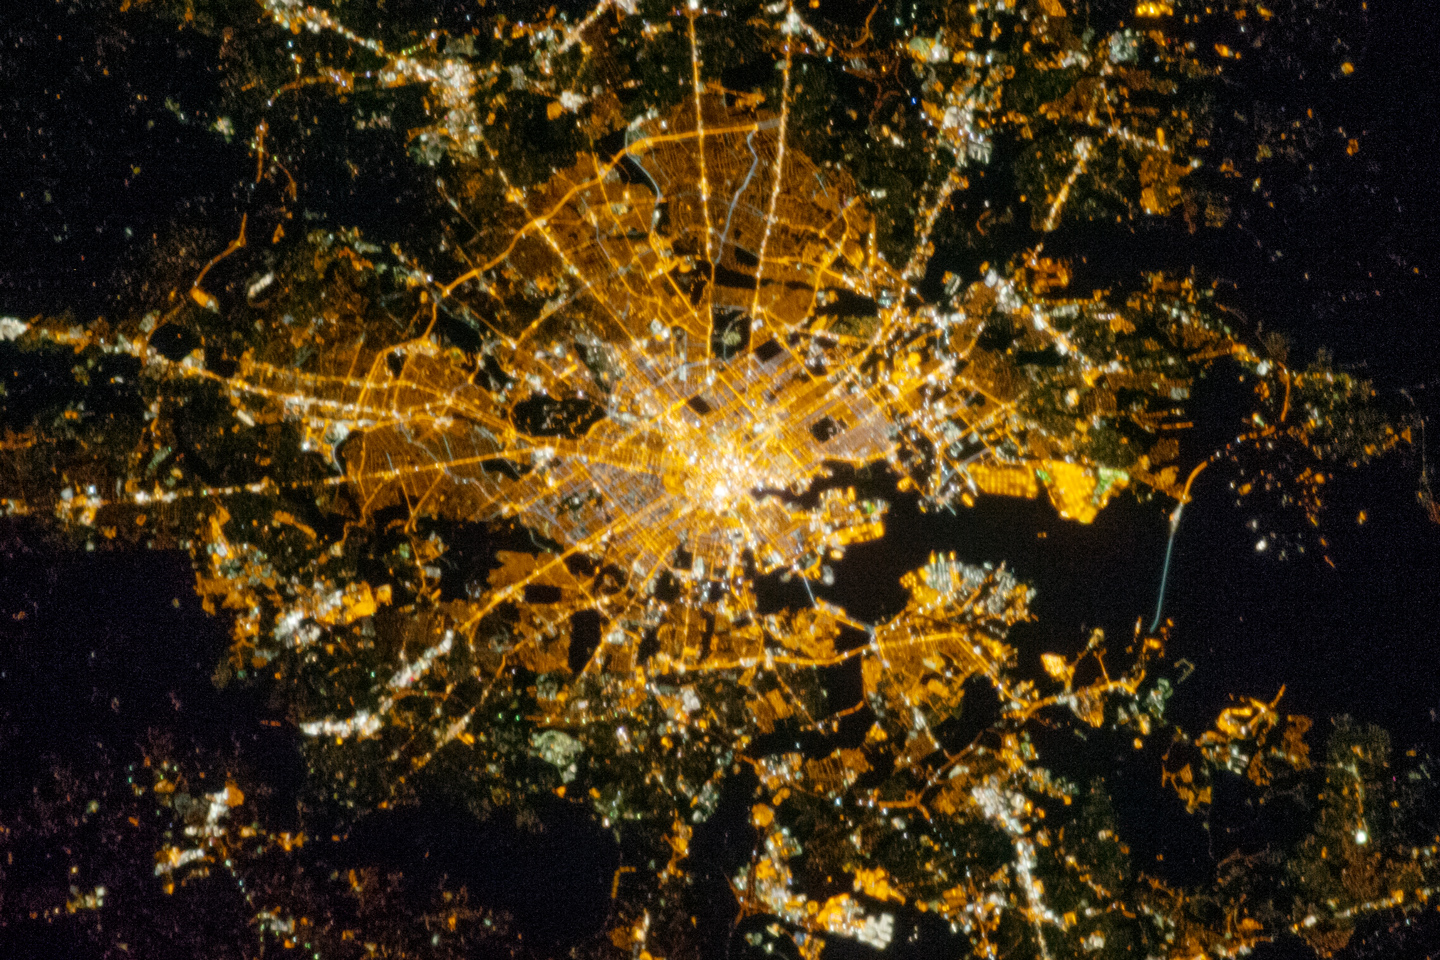 Снимки городов из космоса высокого разрешения